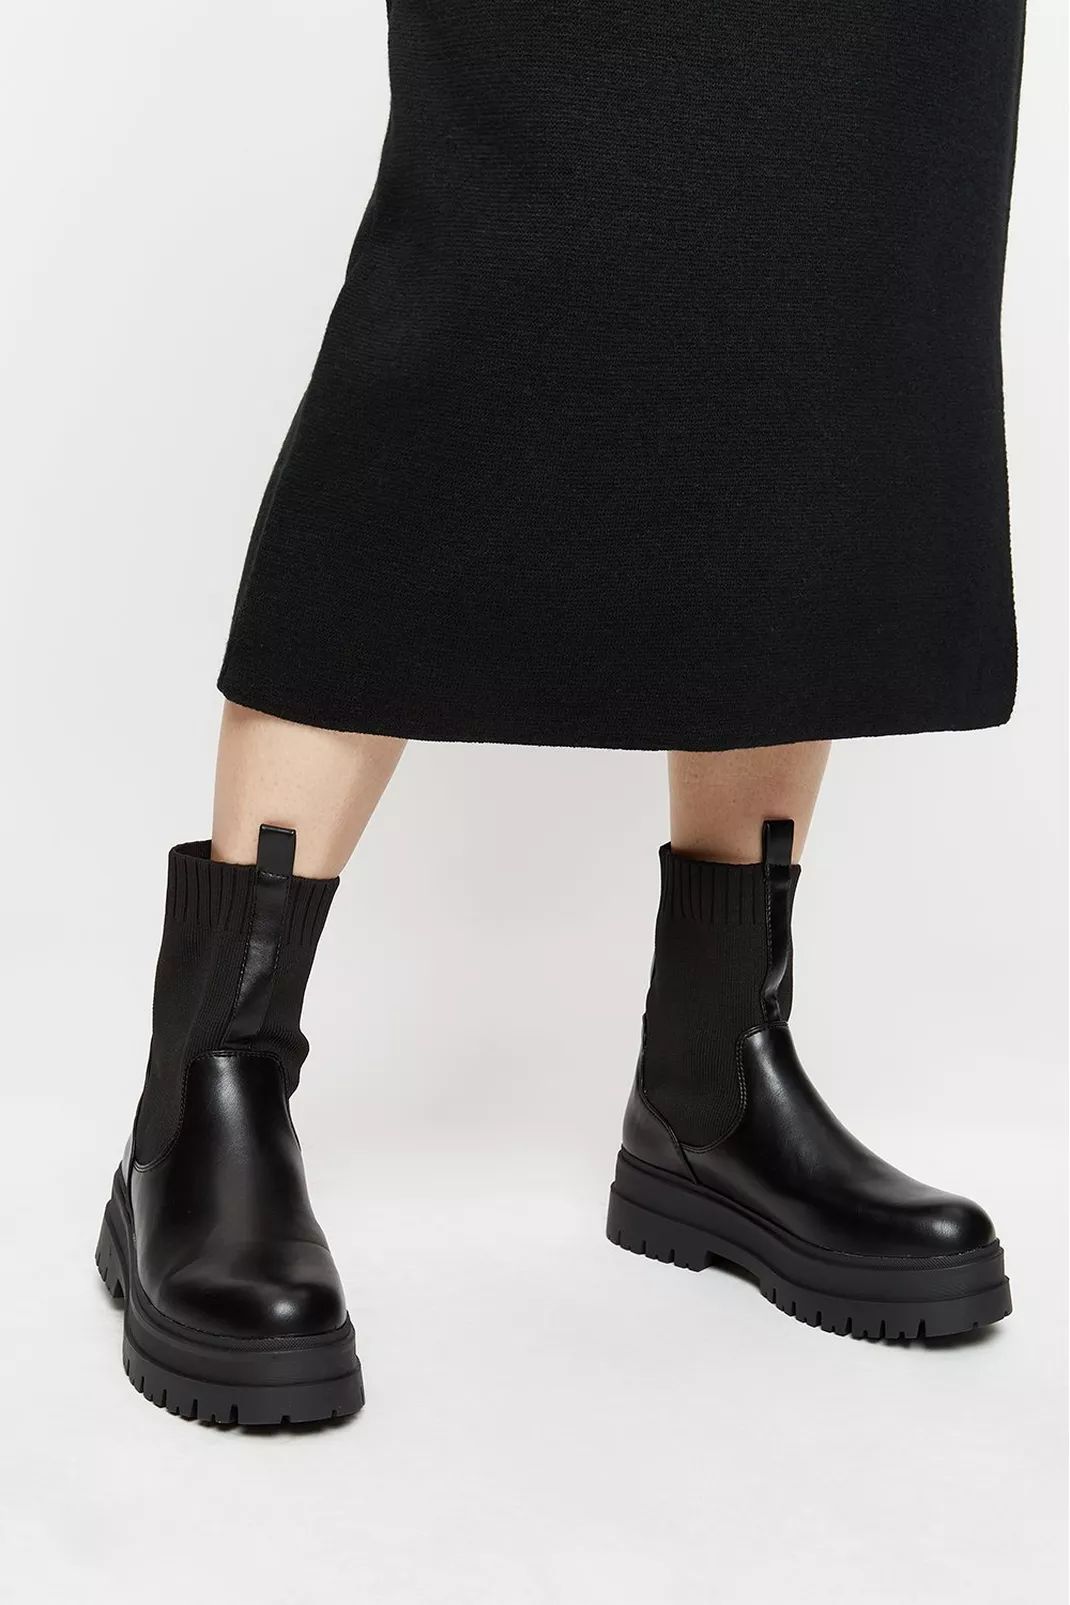 Buy Mars Knitted Chunky Chelsea Boot for GBP 52.00 | Dorothy Perkins UK | Dorothy Perkins (UK)